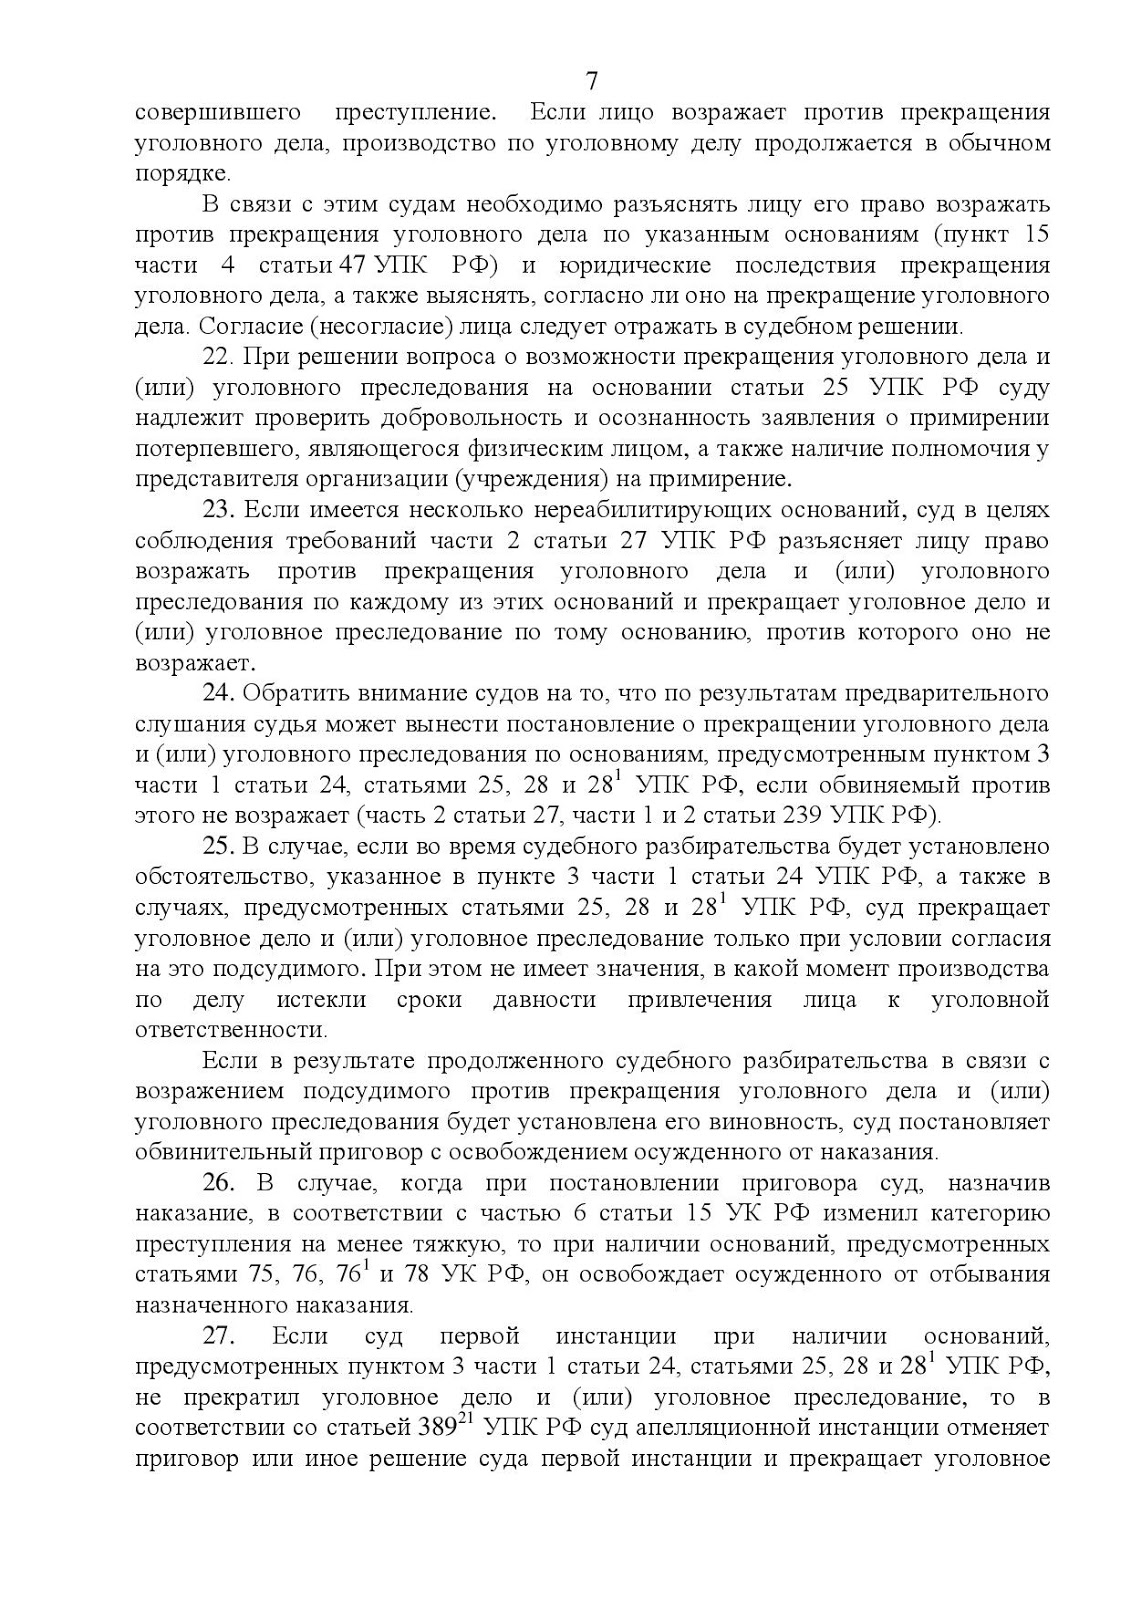 Постановление пленума верховного суда меры пресечения. Пленум от 19.12.2013 #41.